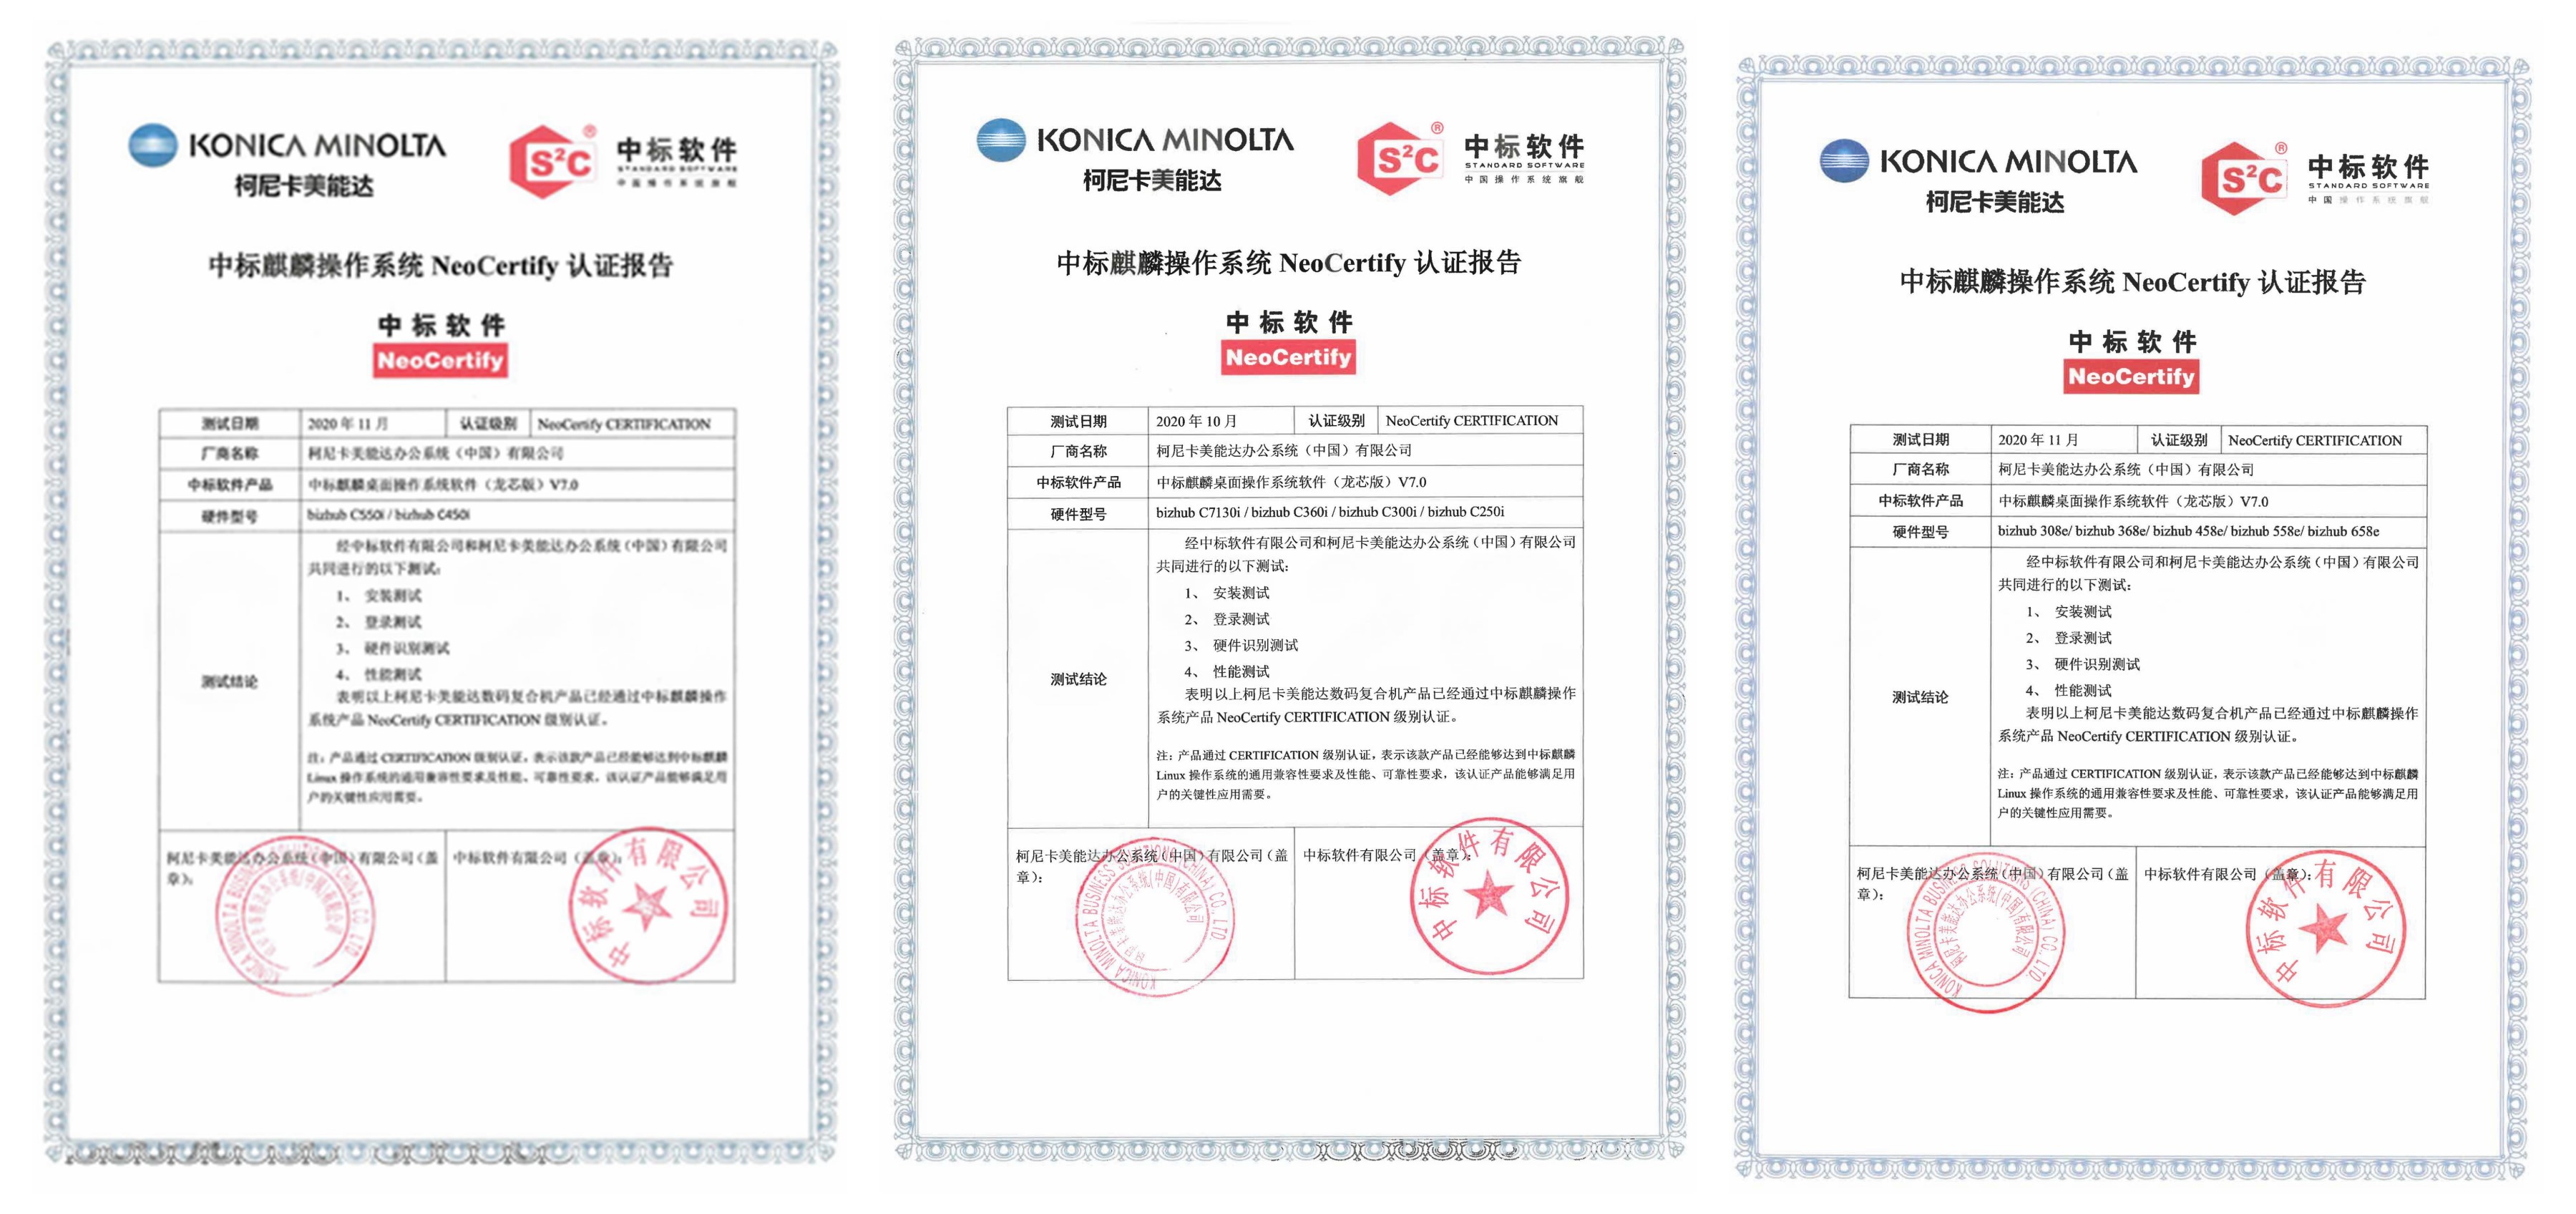 1-中标麒麟操作系统NeoCertify 认证报告（部分报告）.jpg